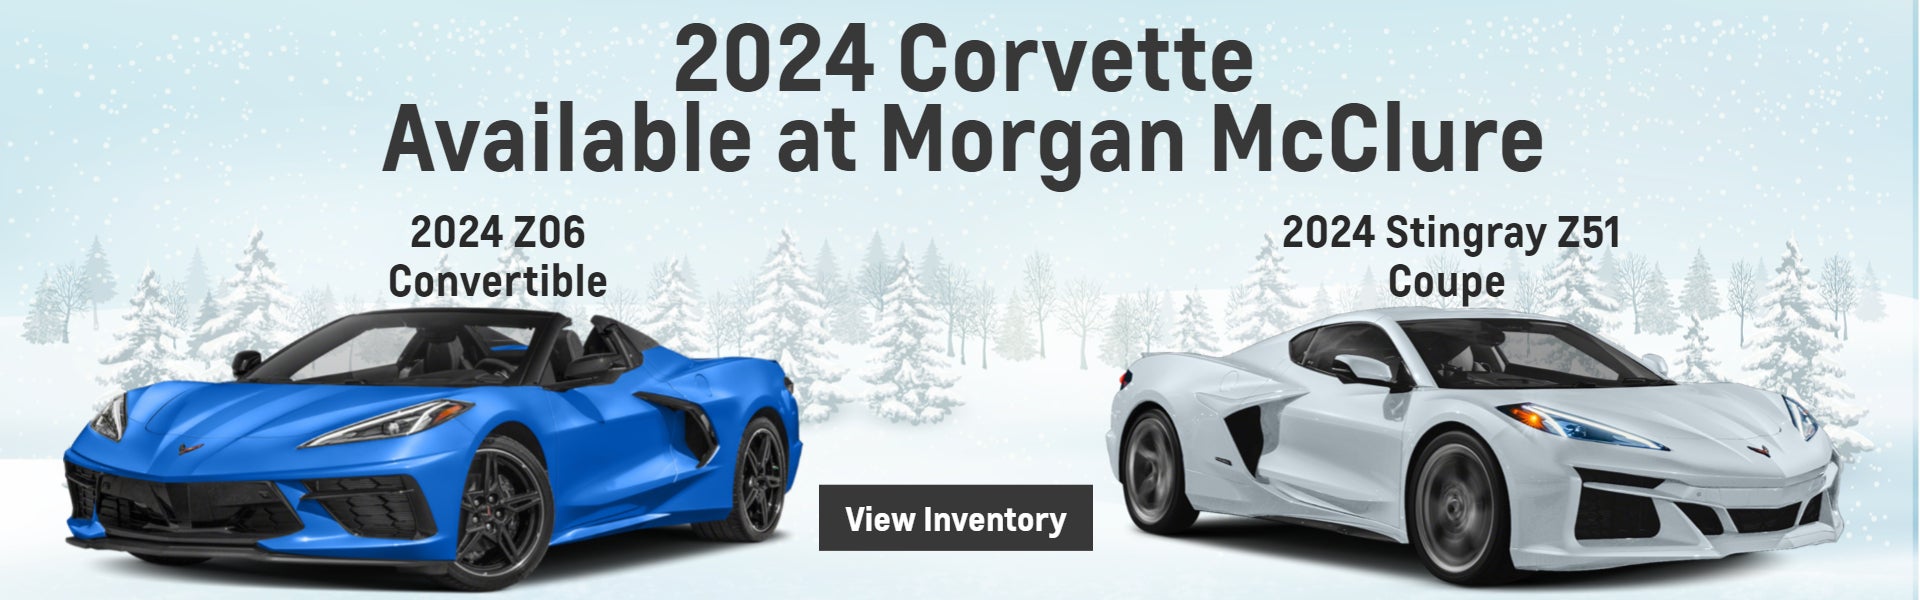 2024 Corvette